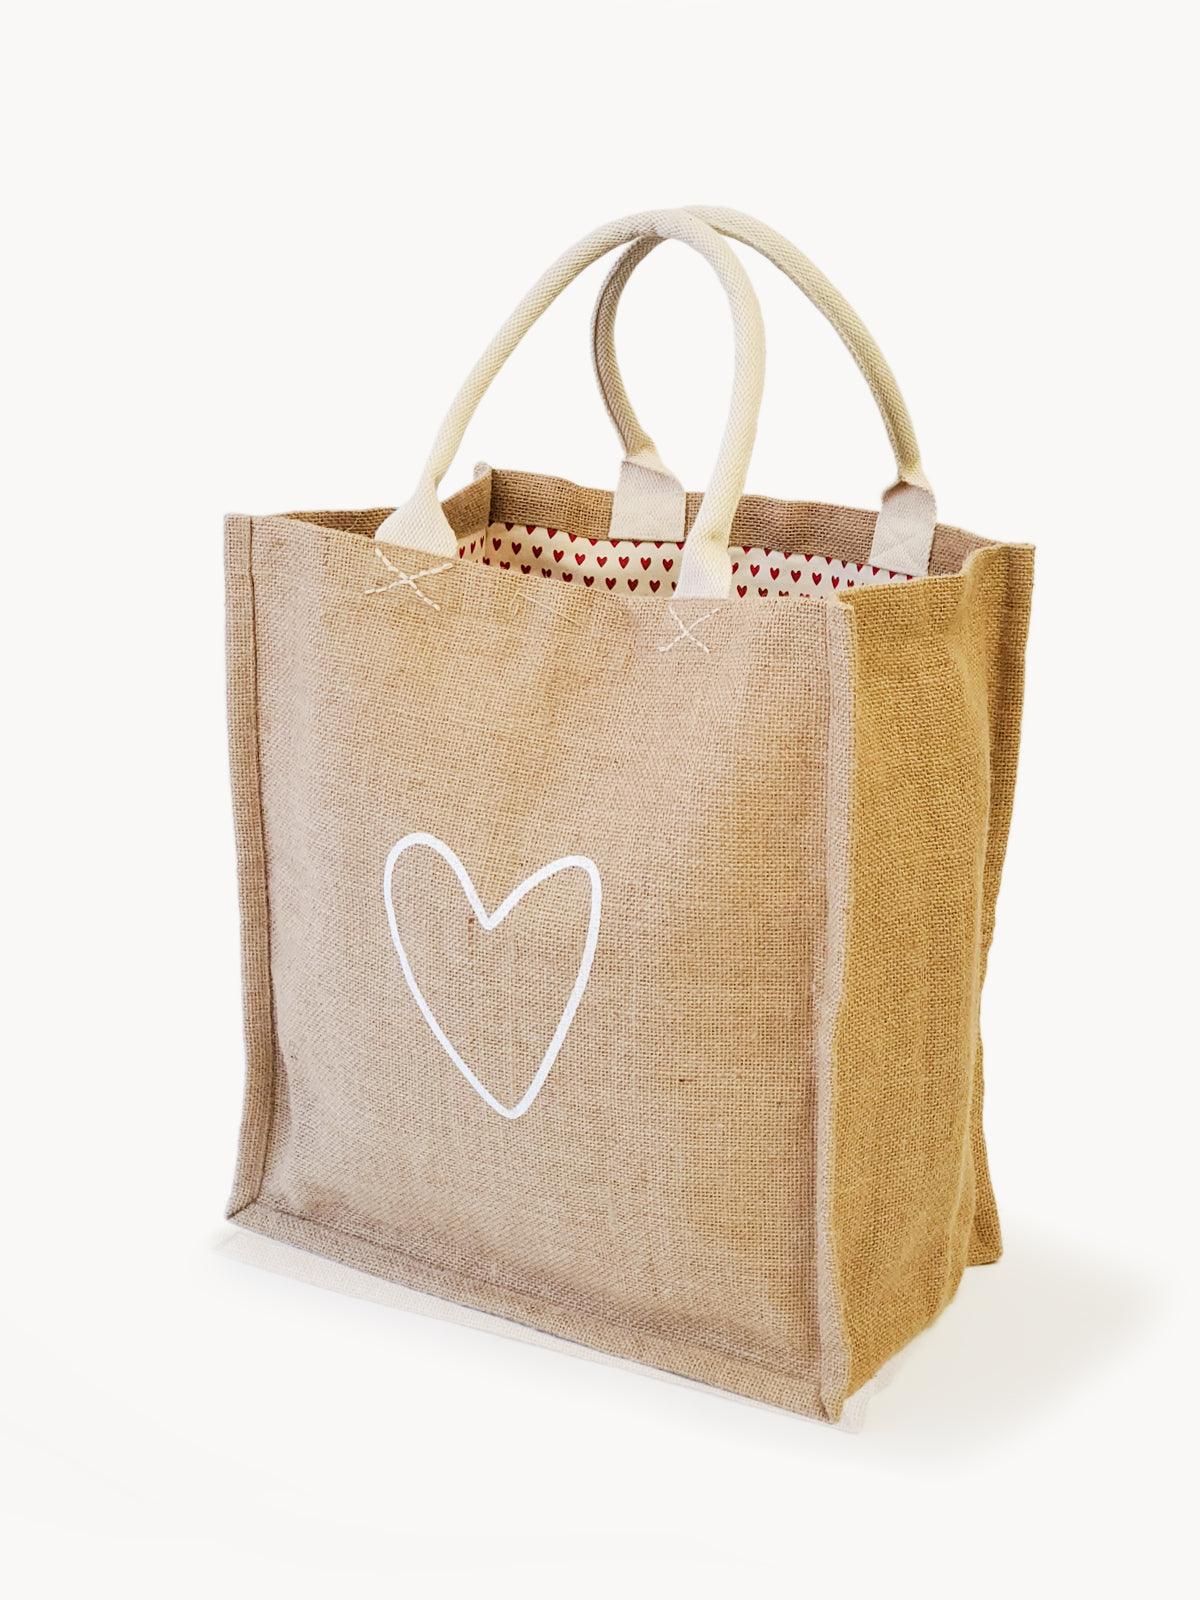 Love Jute Canvas Bag - Plant Paradise Boutique